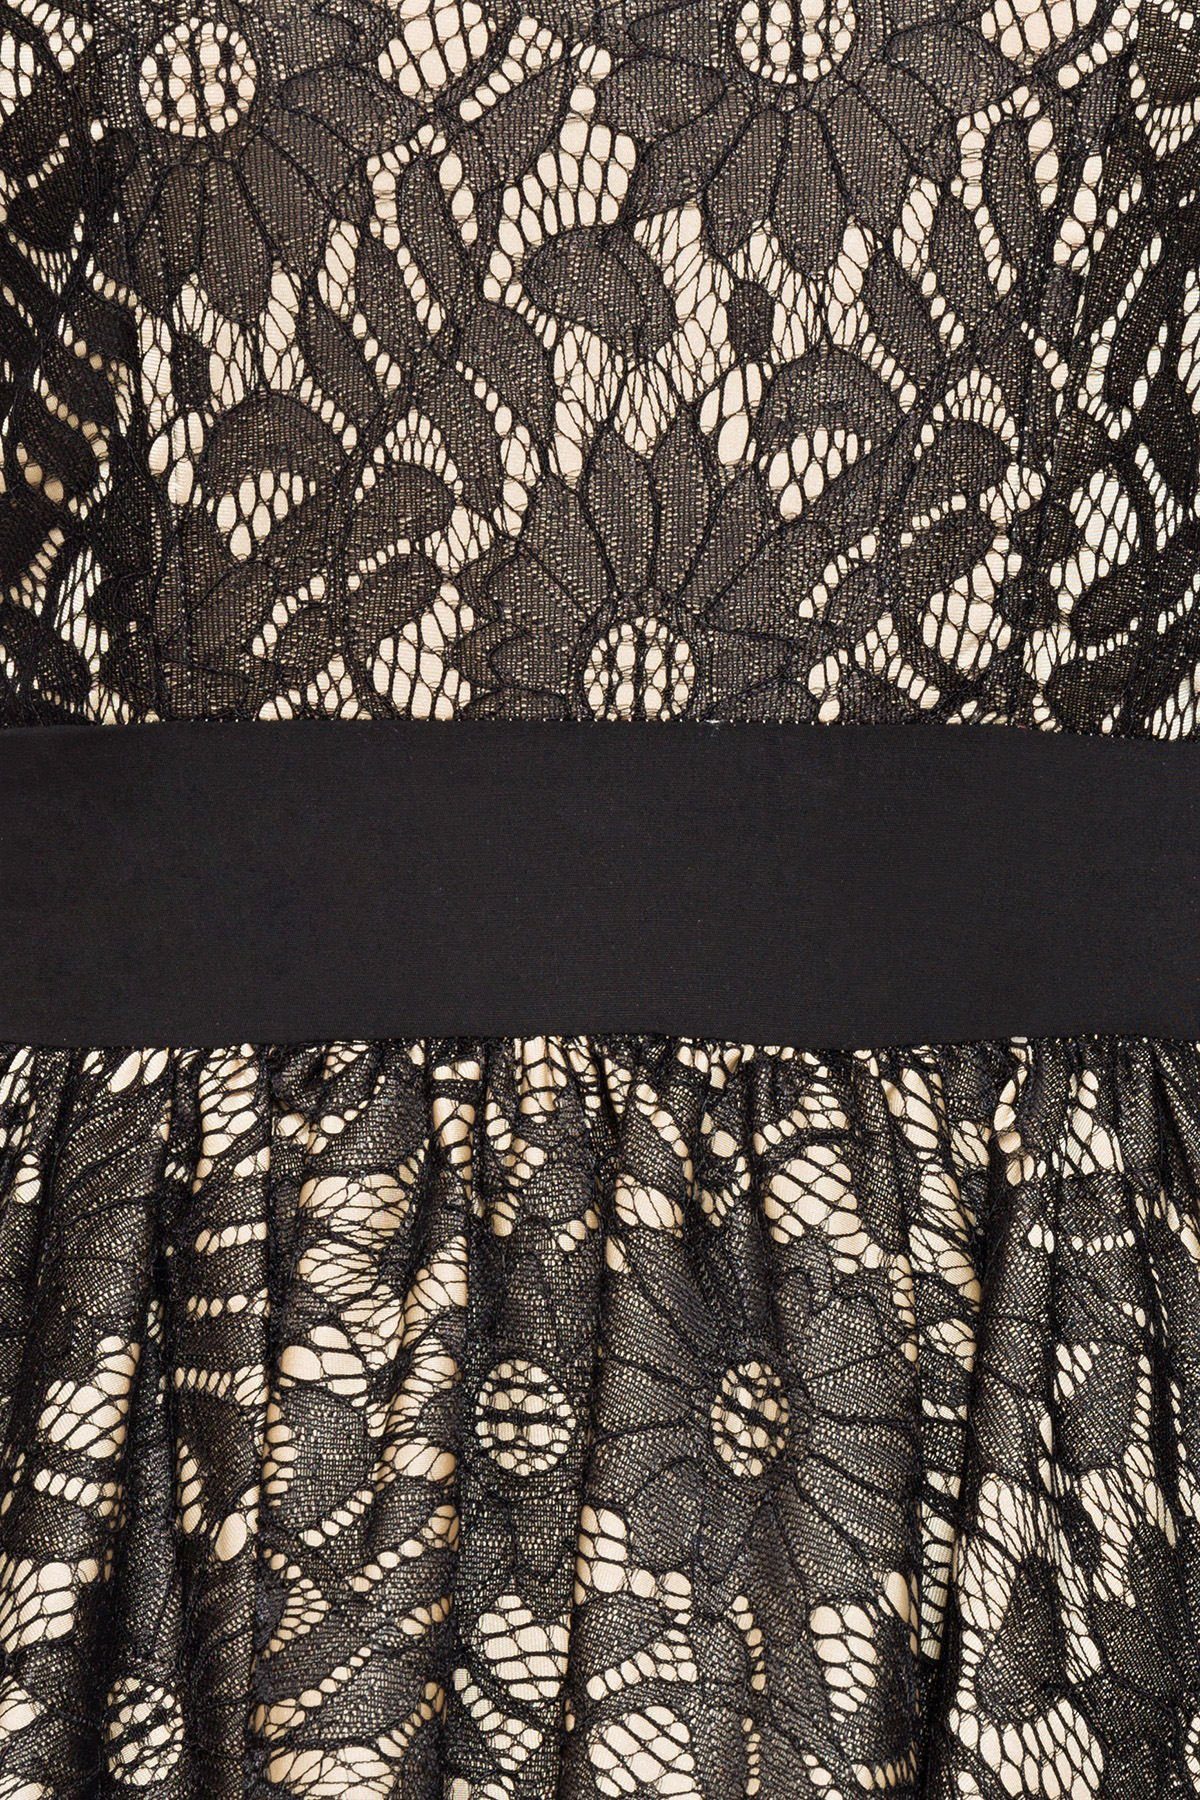 BELSIRA Kleid Jahre Vintage-Spitzenkleid Rockabilly Up Pin A-Linien-Kleid 50er Retrokleid